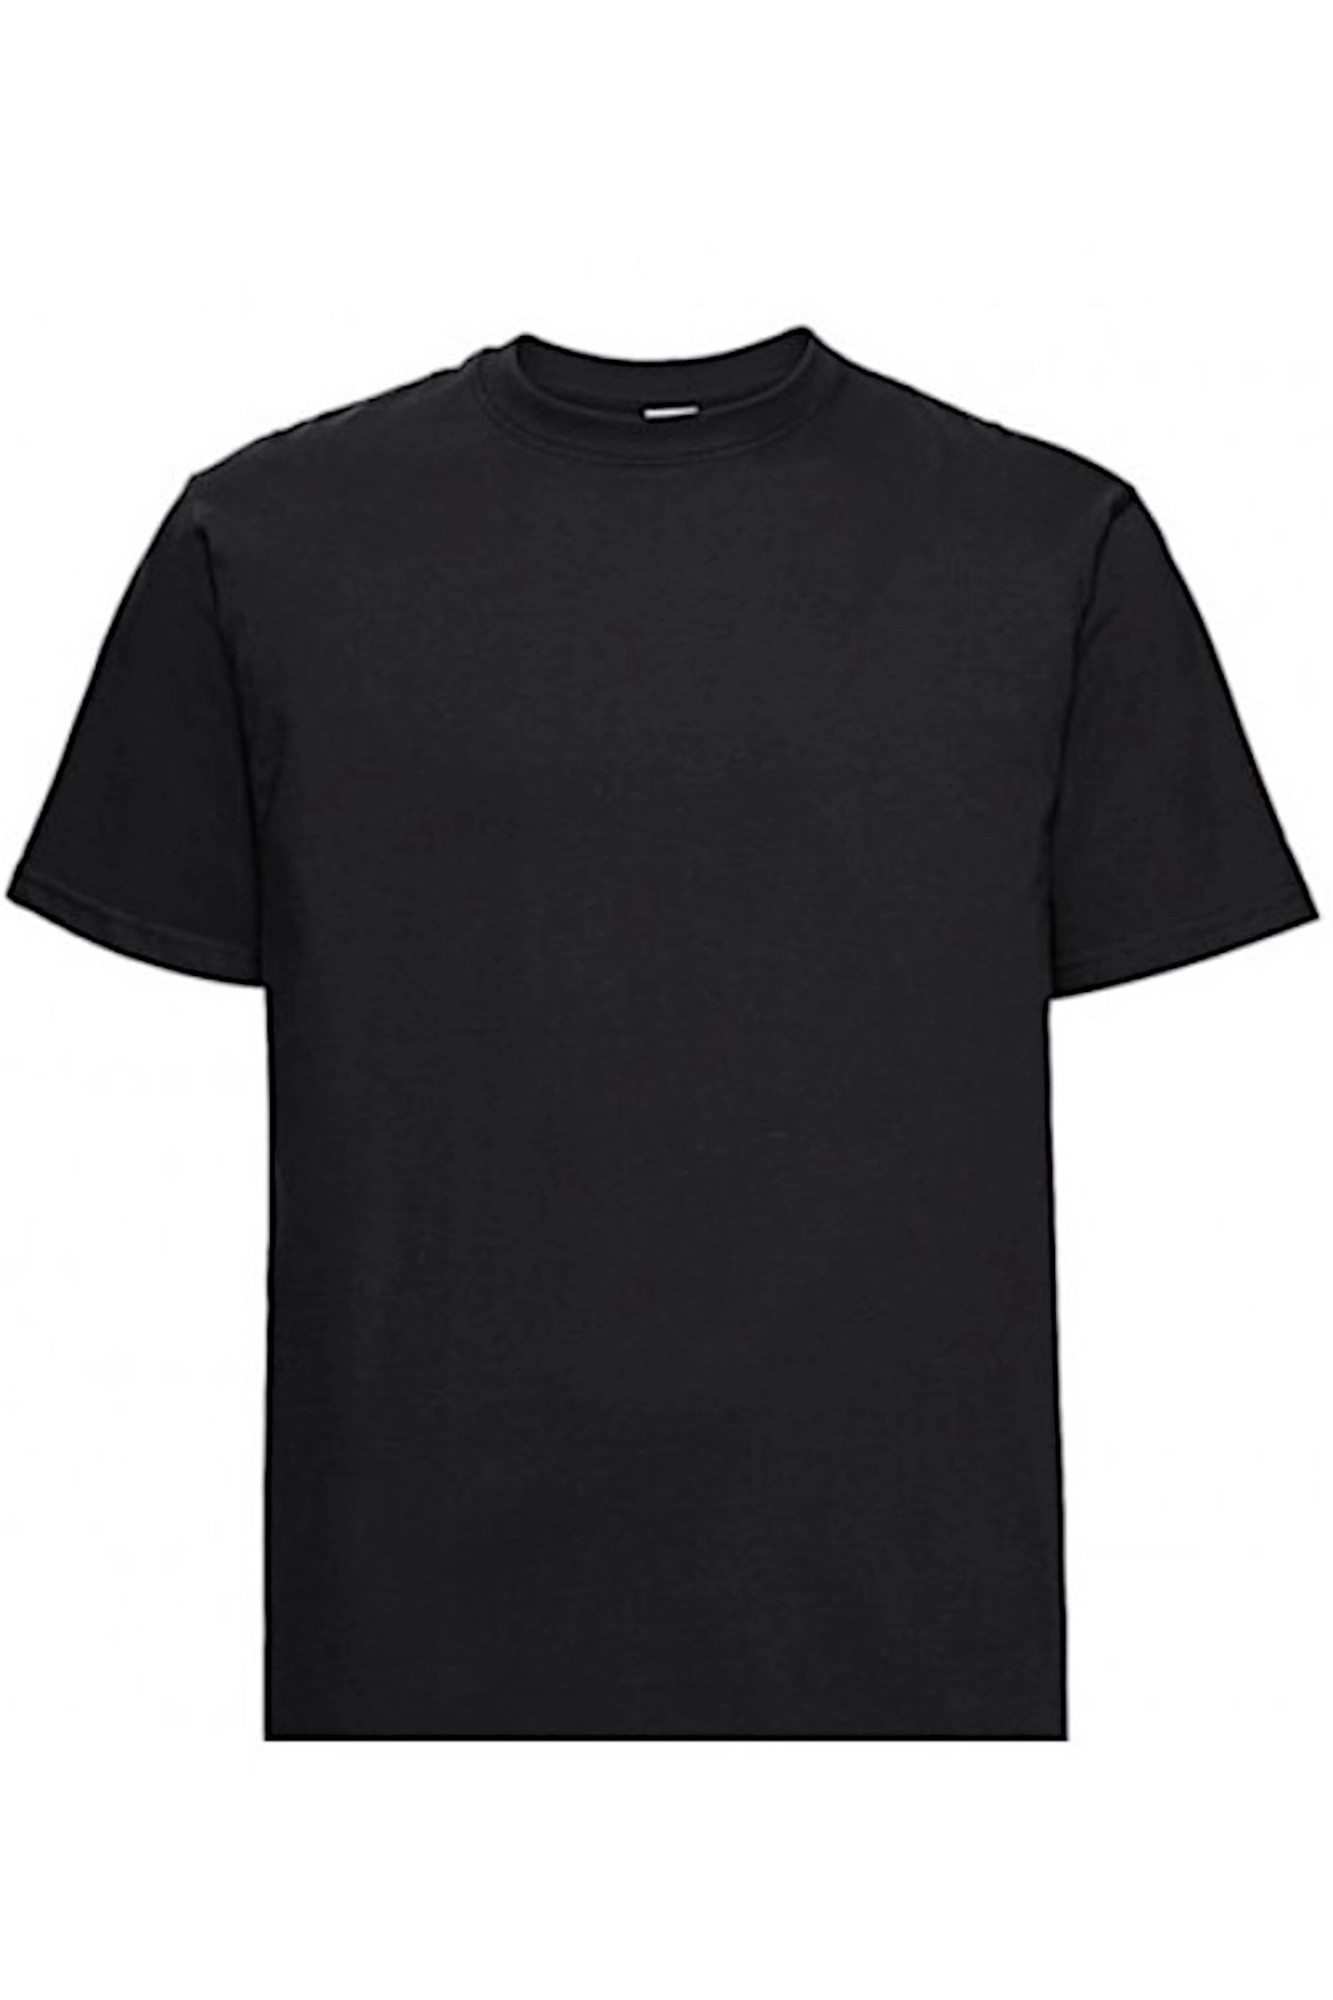 Pánské tričko 002 black - NOVITI černá L